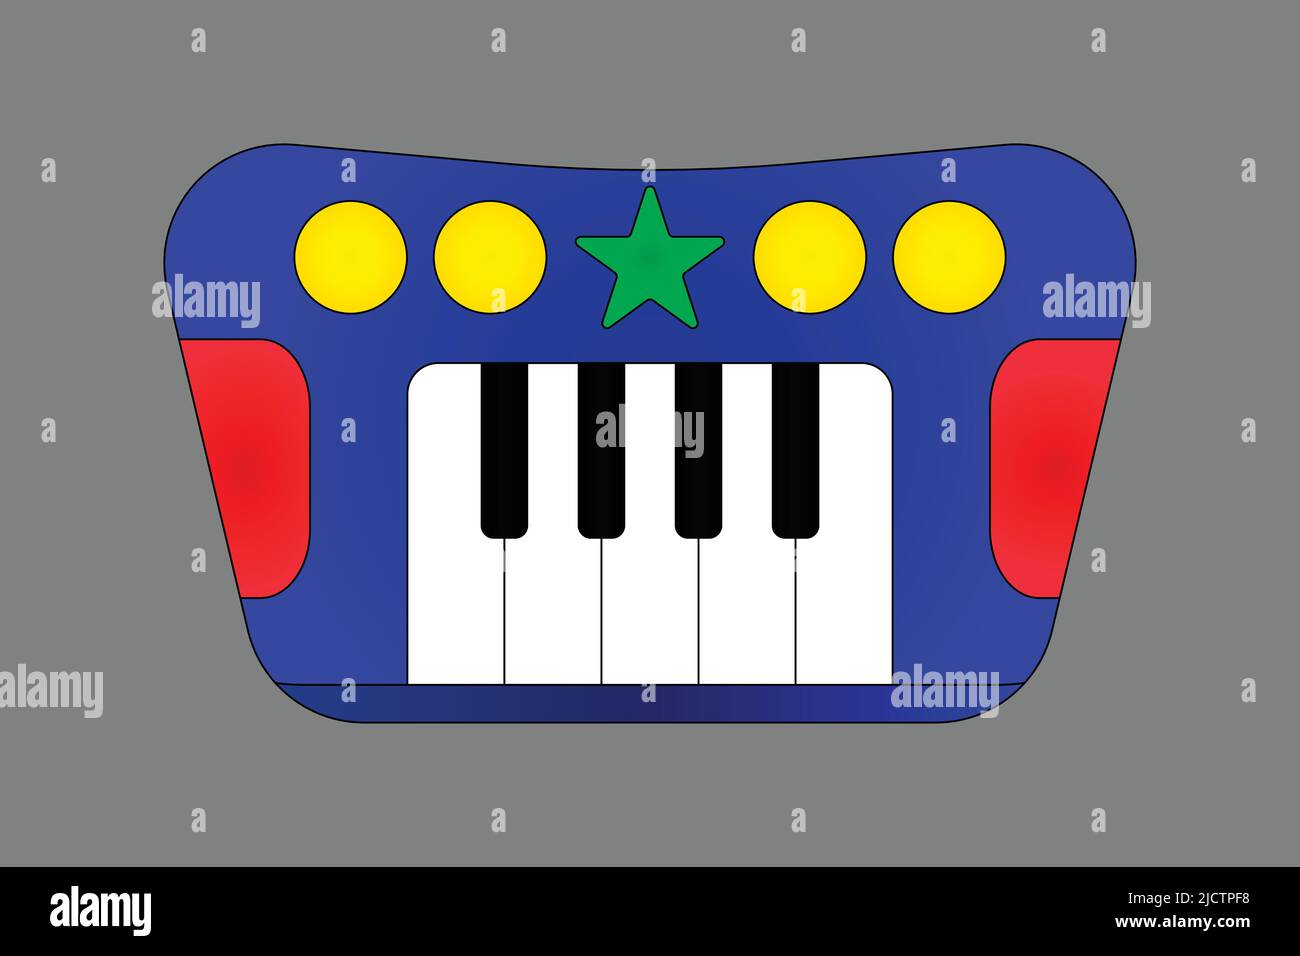 Draufsicht auf ein buntes Klavierspielzeug - Vektor-Illustration Stock Vektor